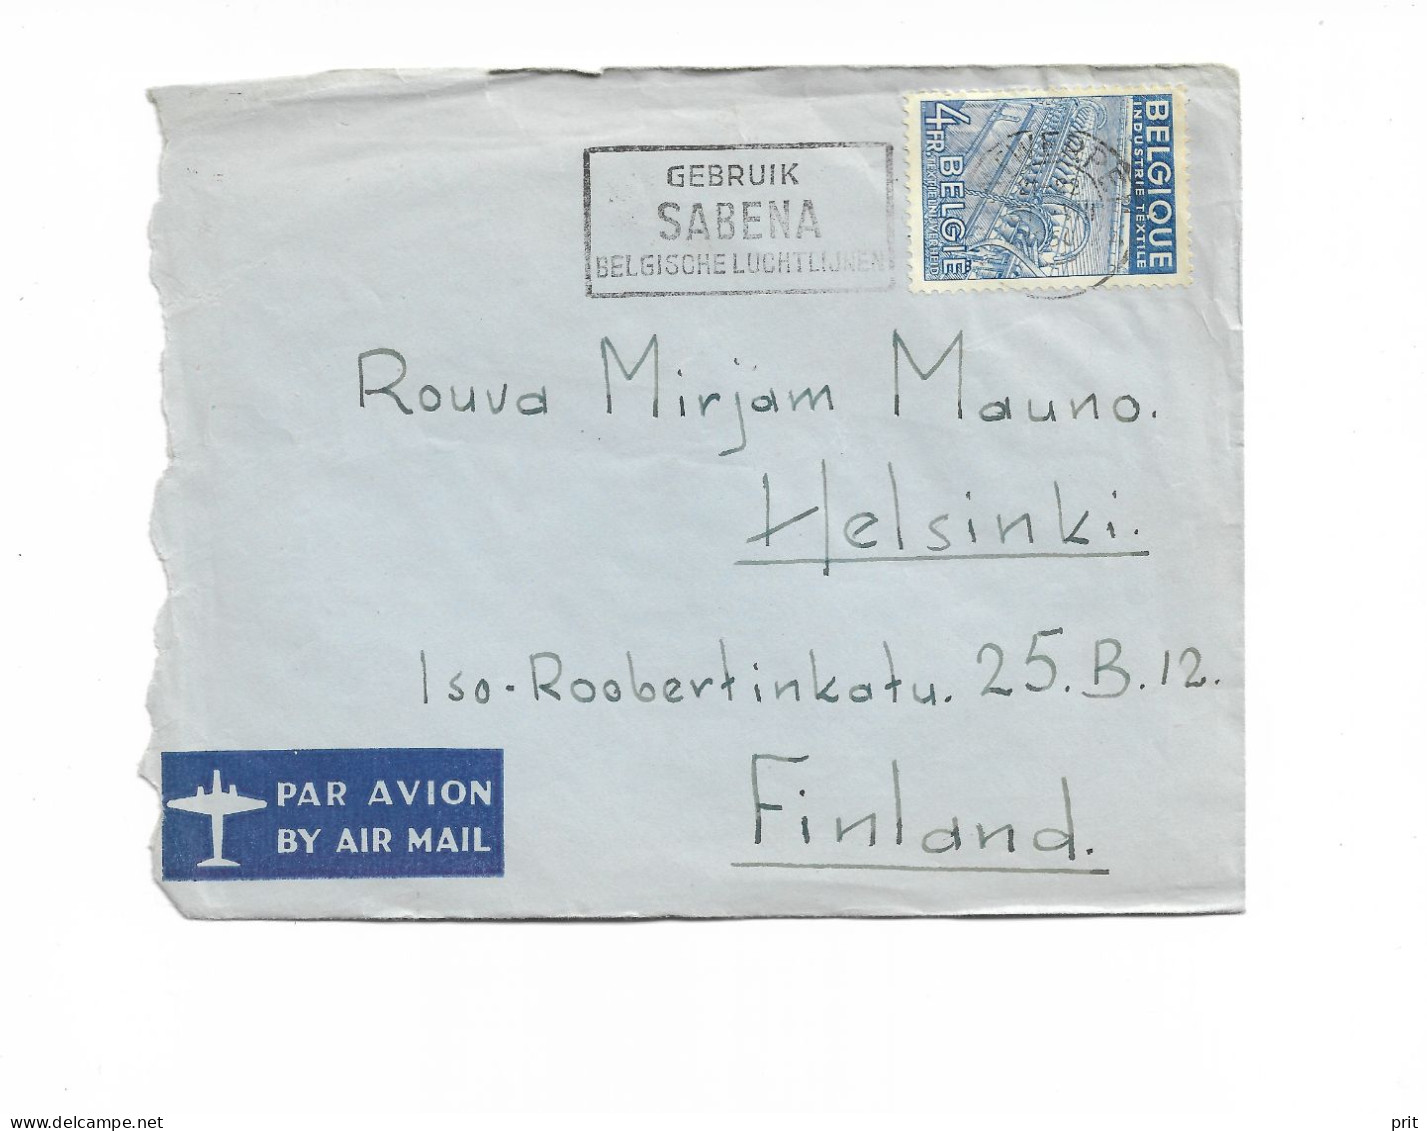 Antwerpen Belgium Airmail Cover To Helsinki Finland 1950 "Gebruik Sabena Belgische Luchtlijnen" Slogan Cancel - Covers & Documents